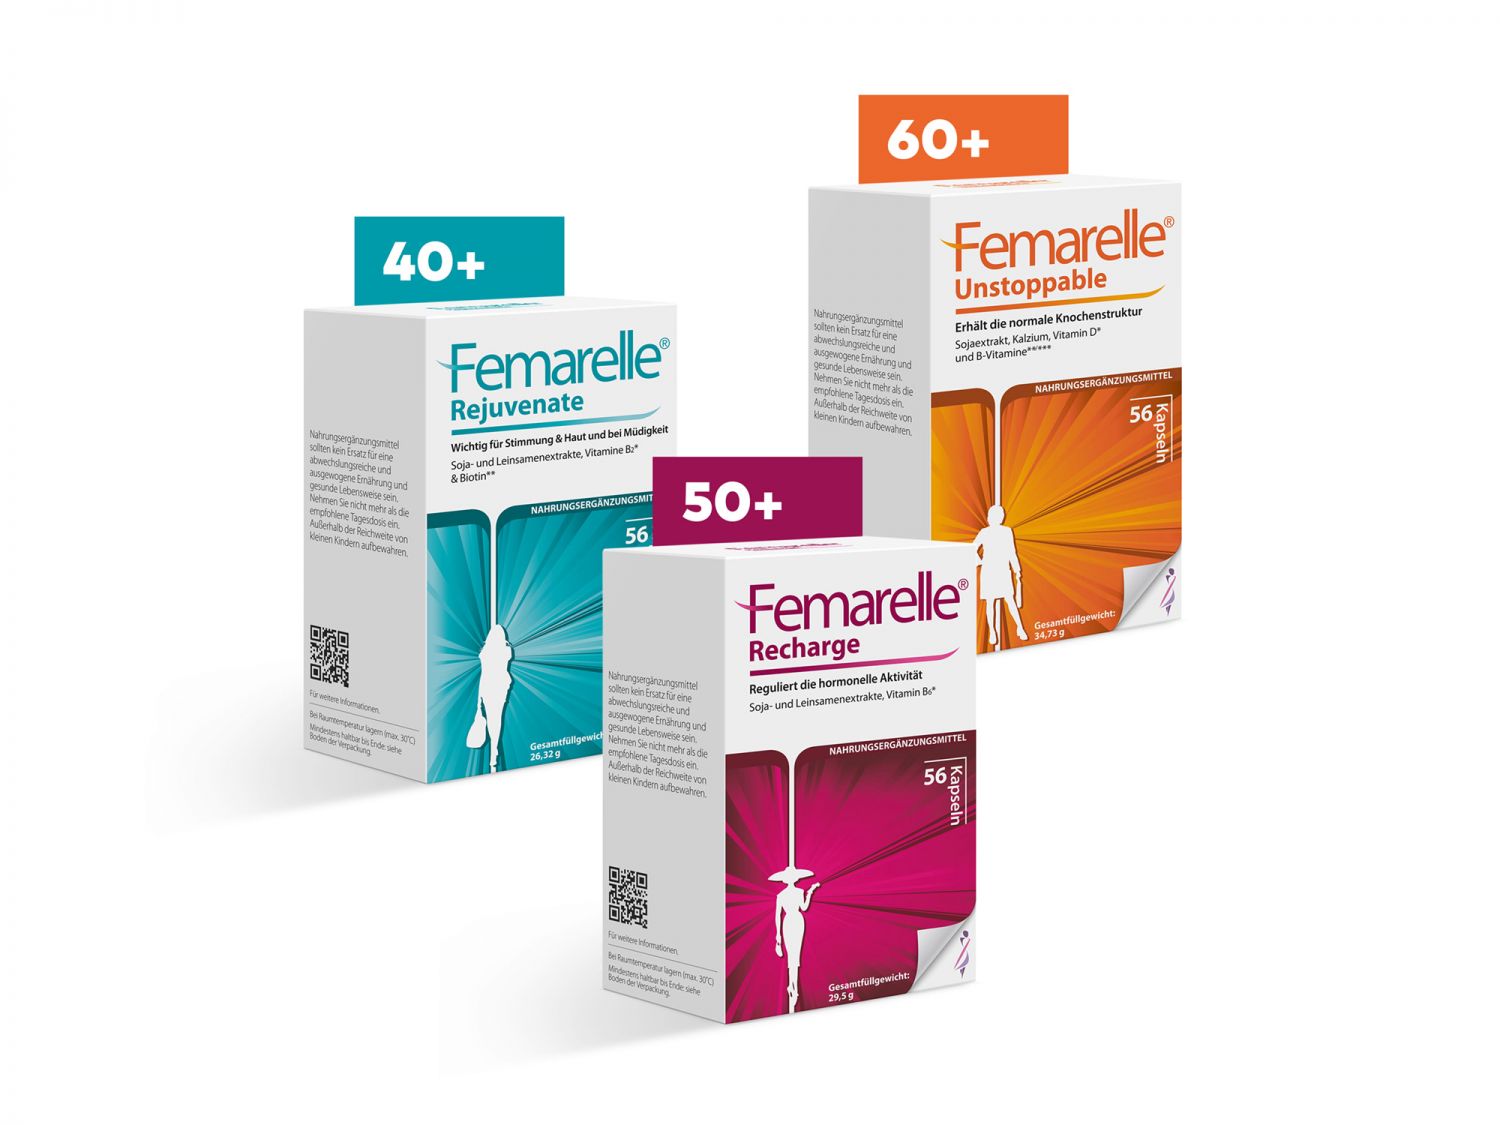 Produktbild von hormonfreien Femarelle Produkten.